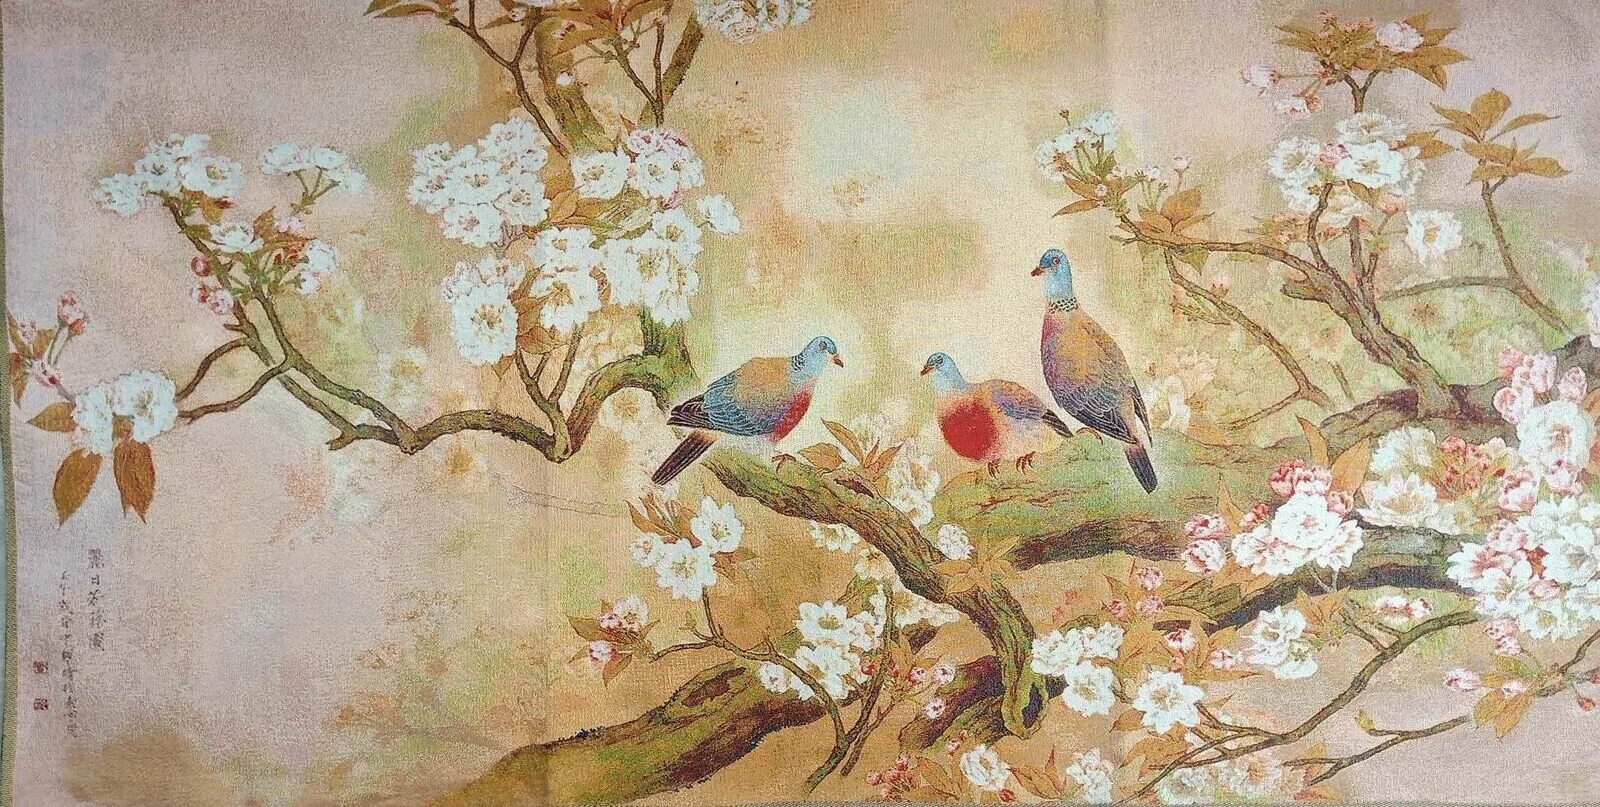 Peach Blossom японская китайская живопись. Японские мотивы в живописи. Китайские мотивы в живописи. Картины с китайскими мотивами.